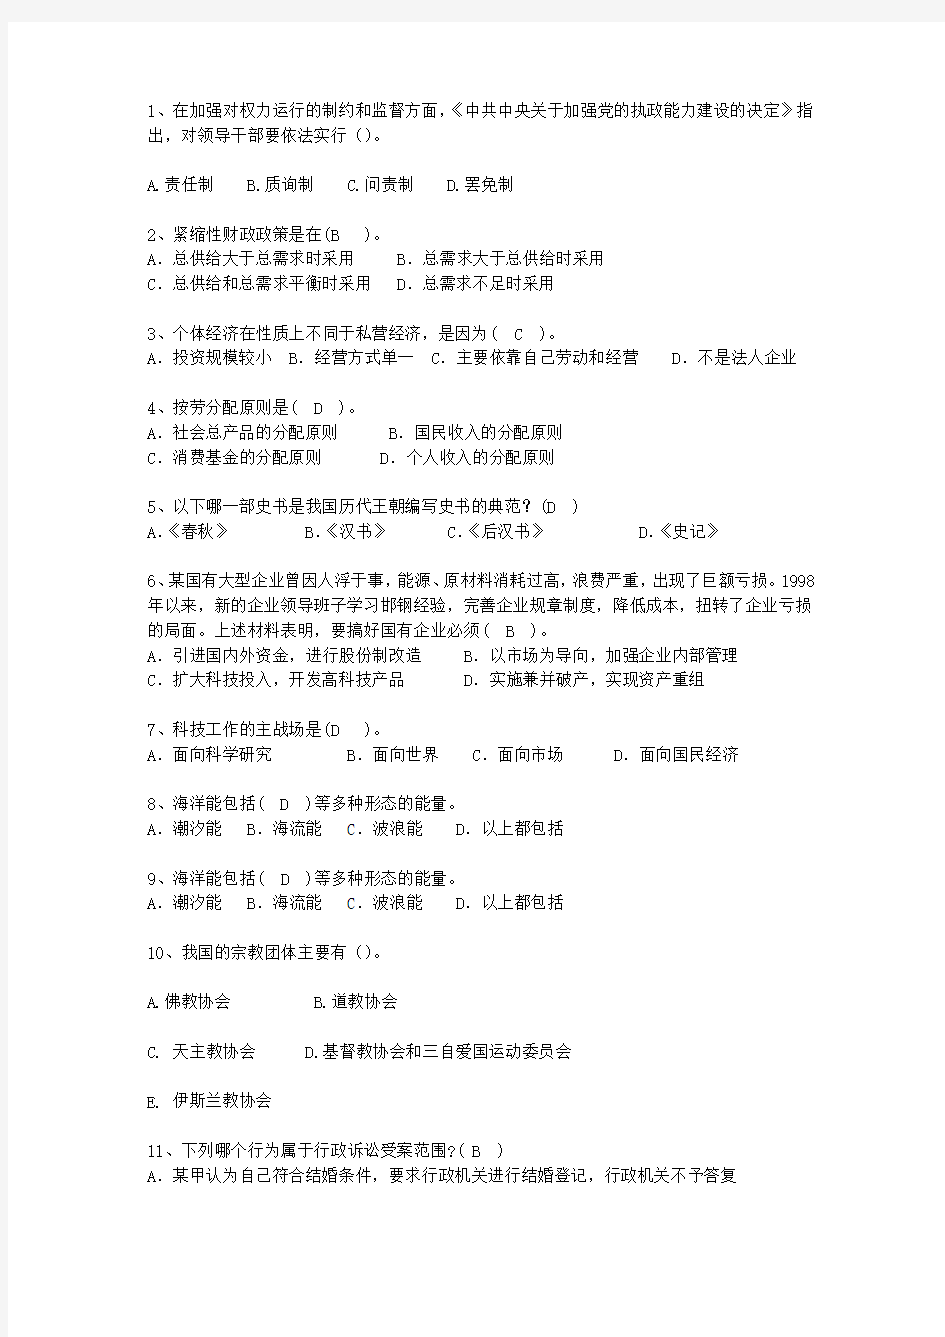 2010江苏省副科级领导干部公开选拔理论考试试题及答案